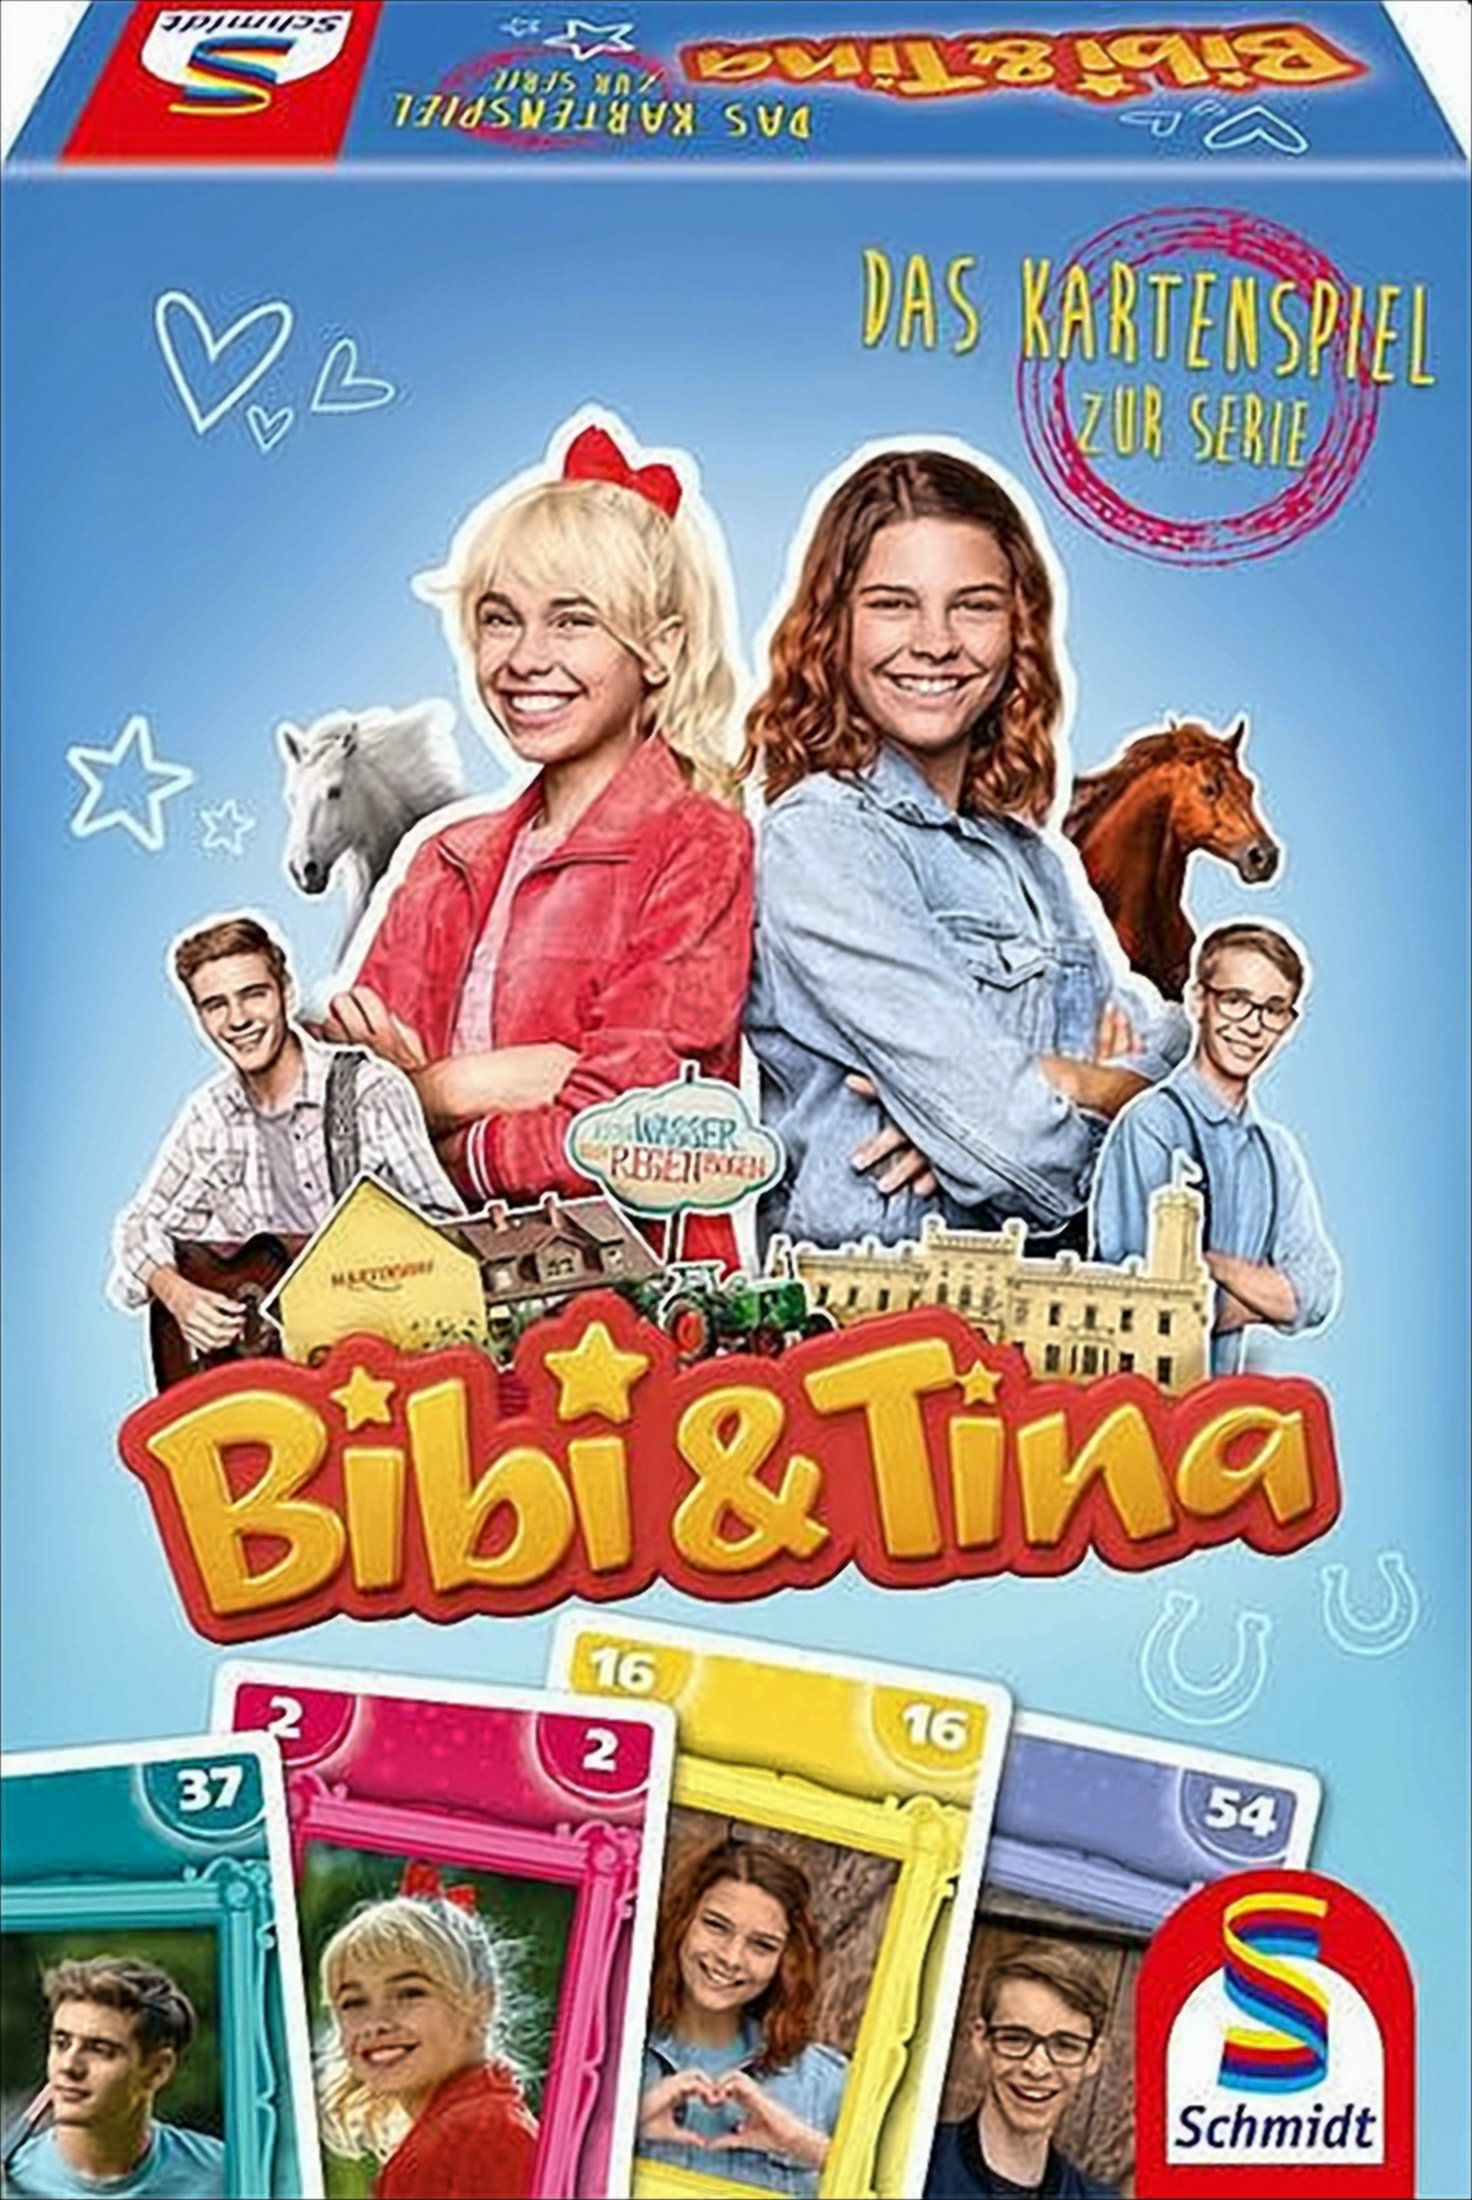 Bibi und Tina, Das Kartenspiel zur Serie von Schmidt Spiele